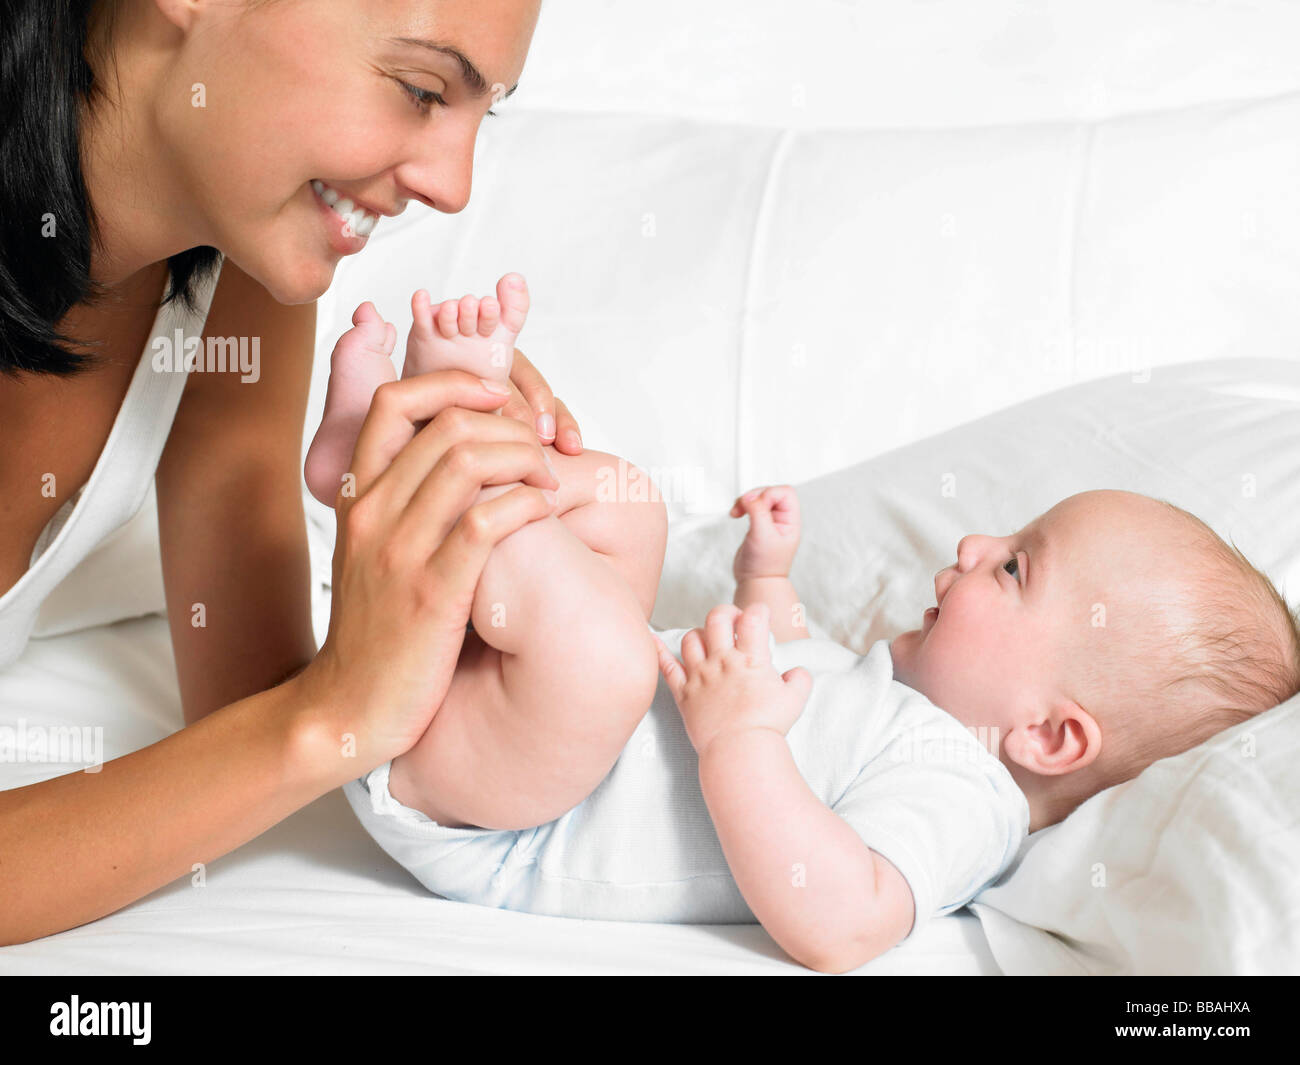 Целую ноги мамы. Мама целует ножки малышу. Фото мама целует ножки малыша. Мать и дитя целует ножку. Ребенок целует ноги маме.